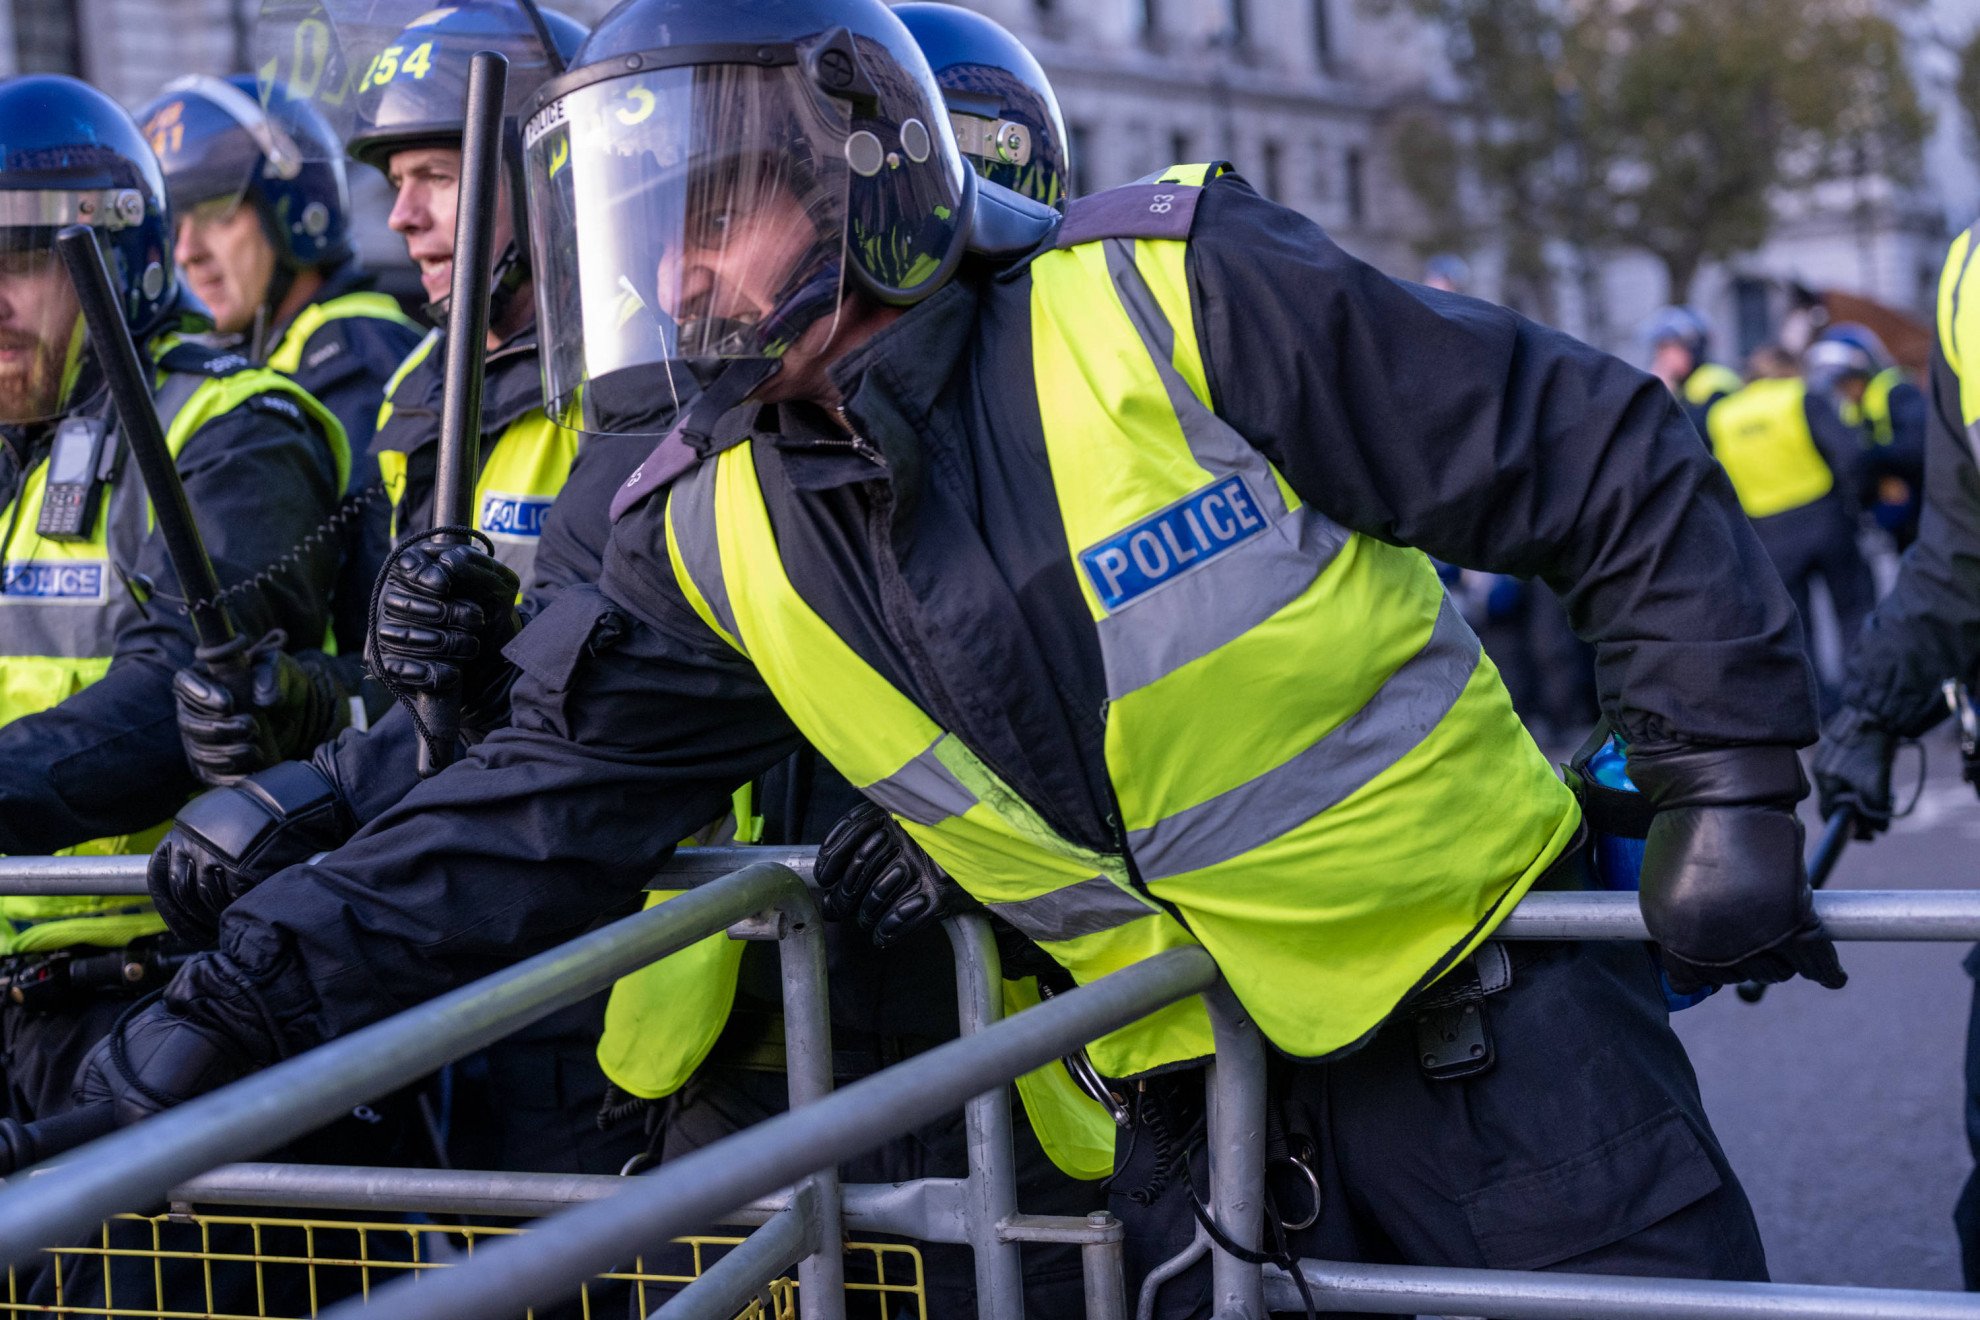 La polizia di Londra sotto accusa: insufficiente la lotta allo sfruttamento  sessuale - Ticinonline